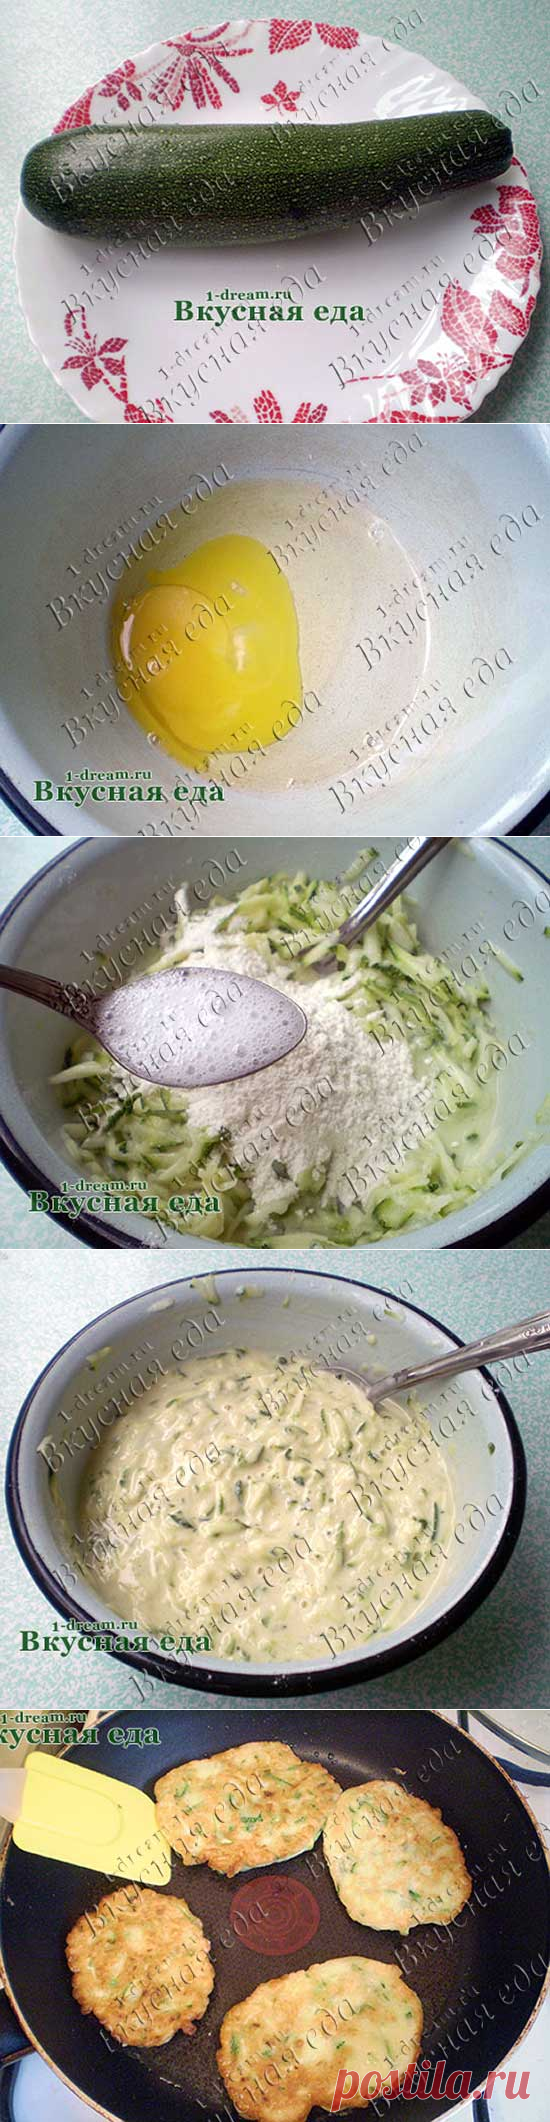 Оладьи из кабачков - фото рецепта кабачковых оладий